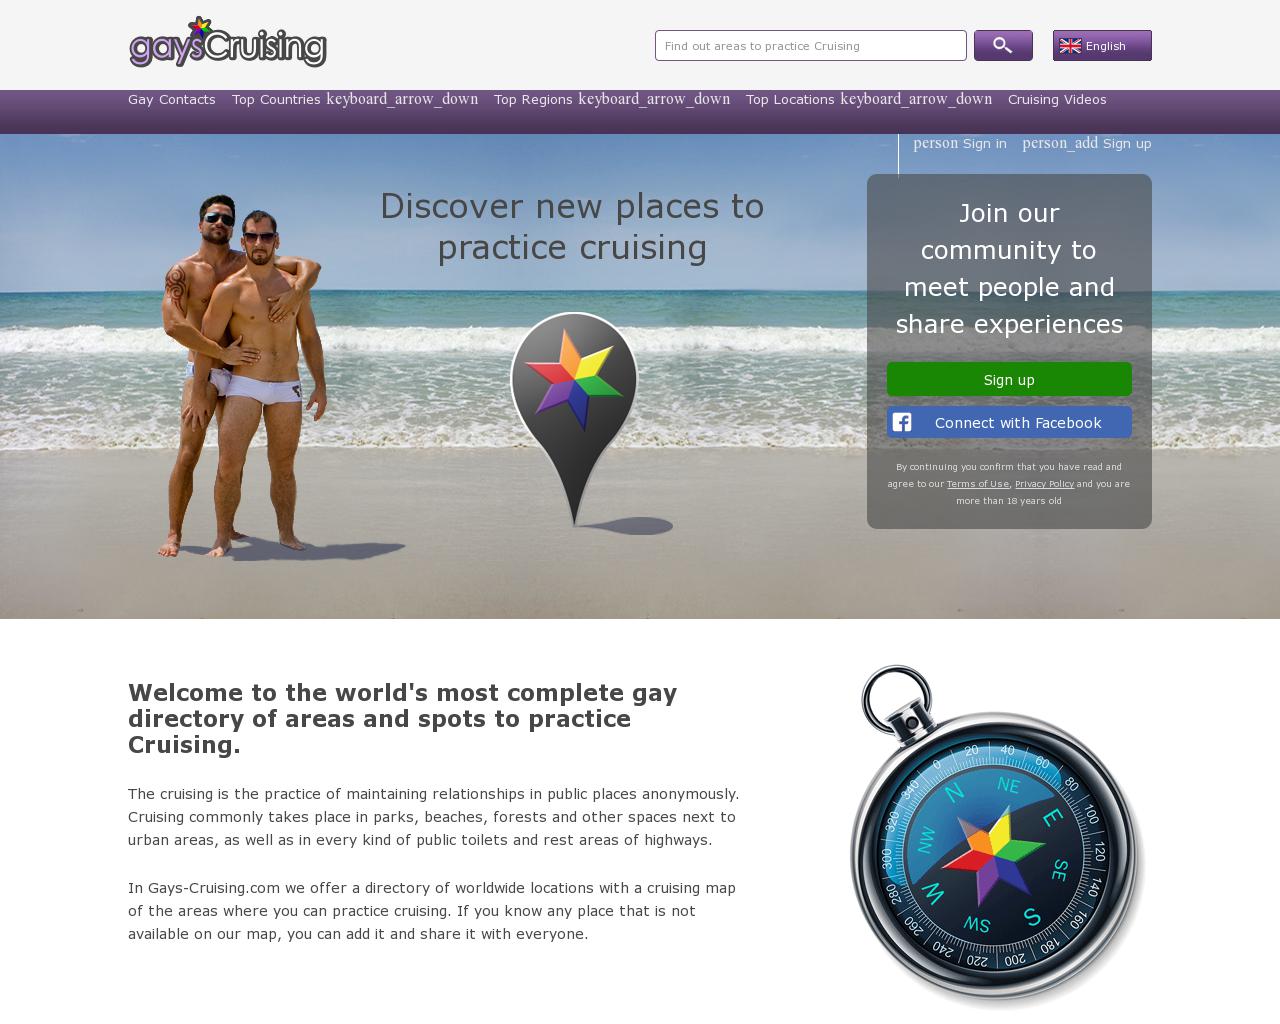 gays-cruising.com